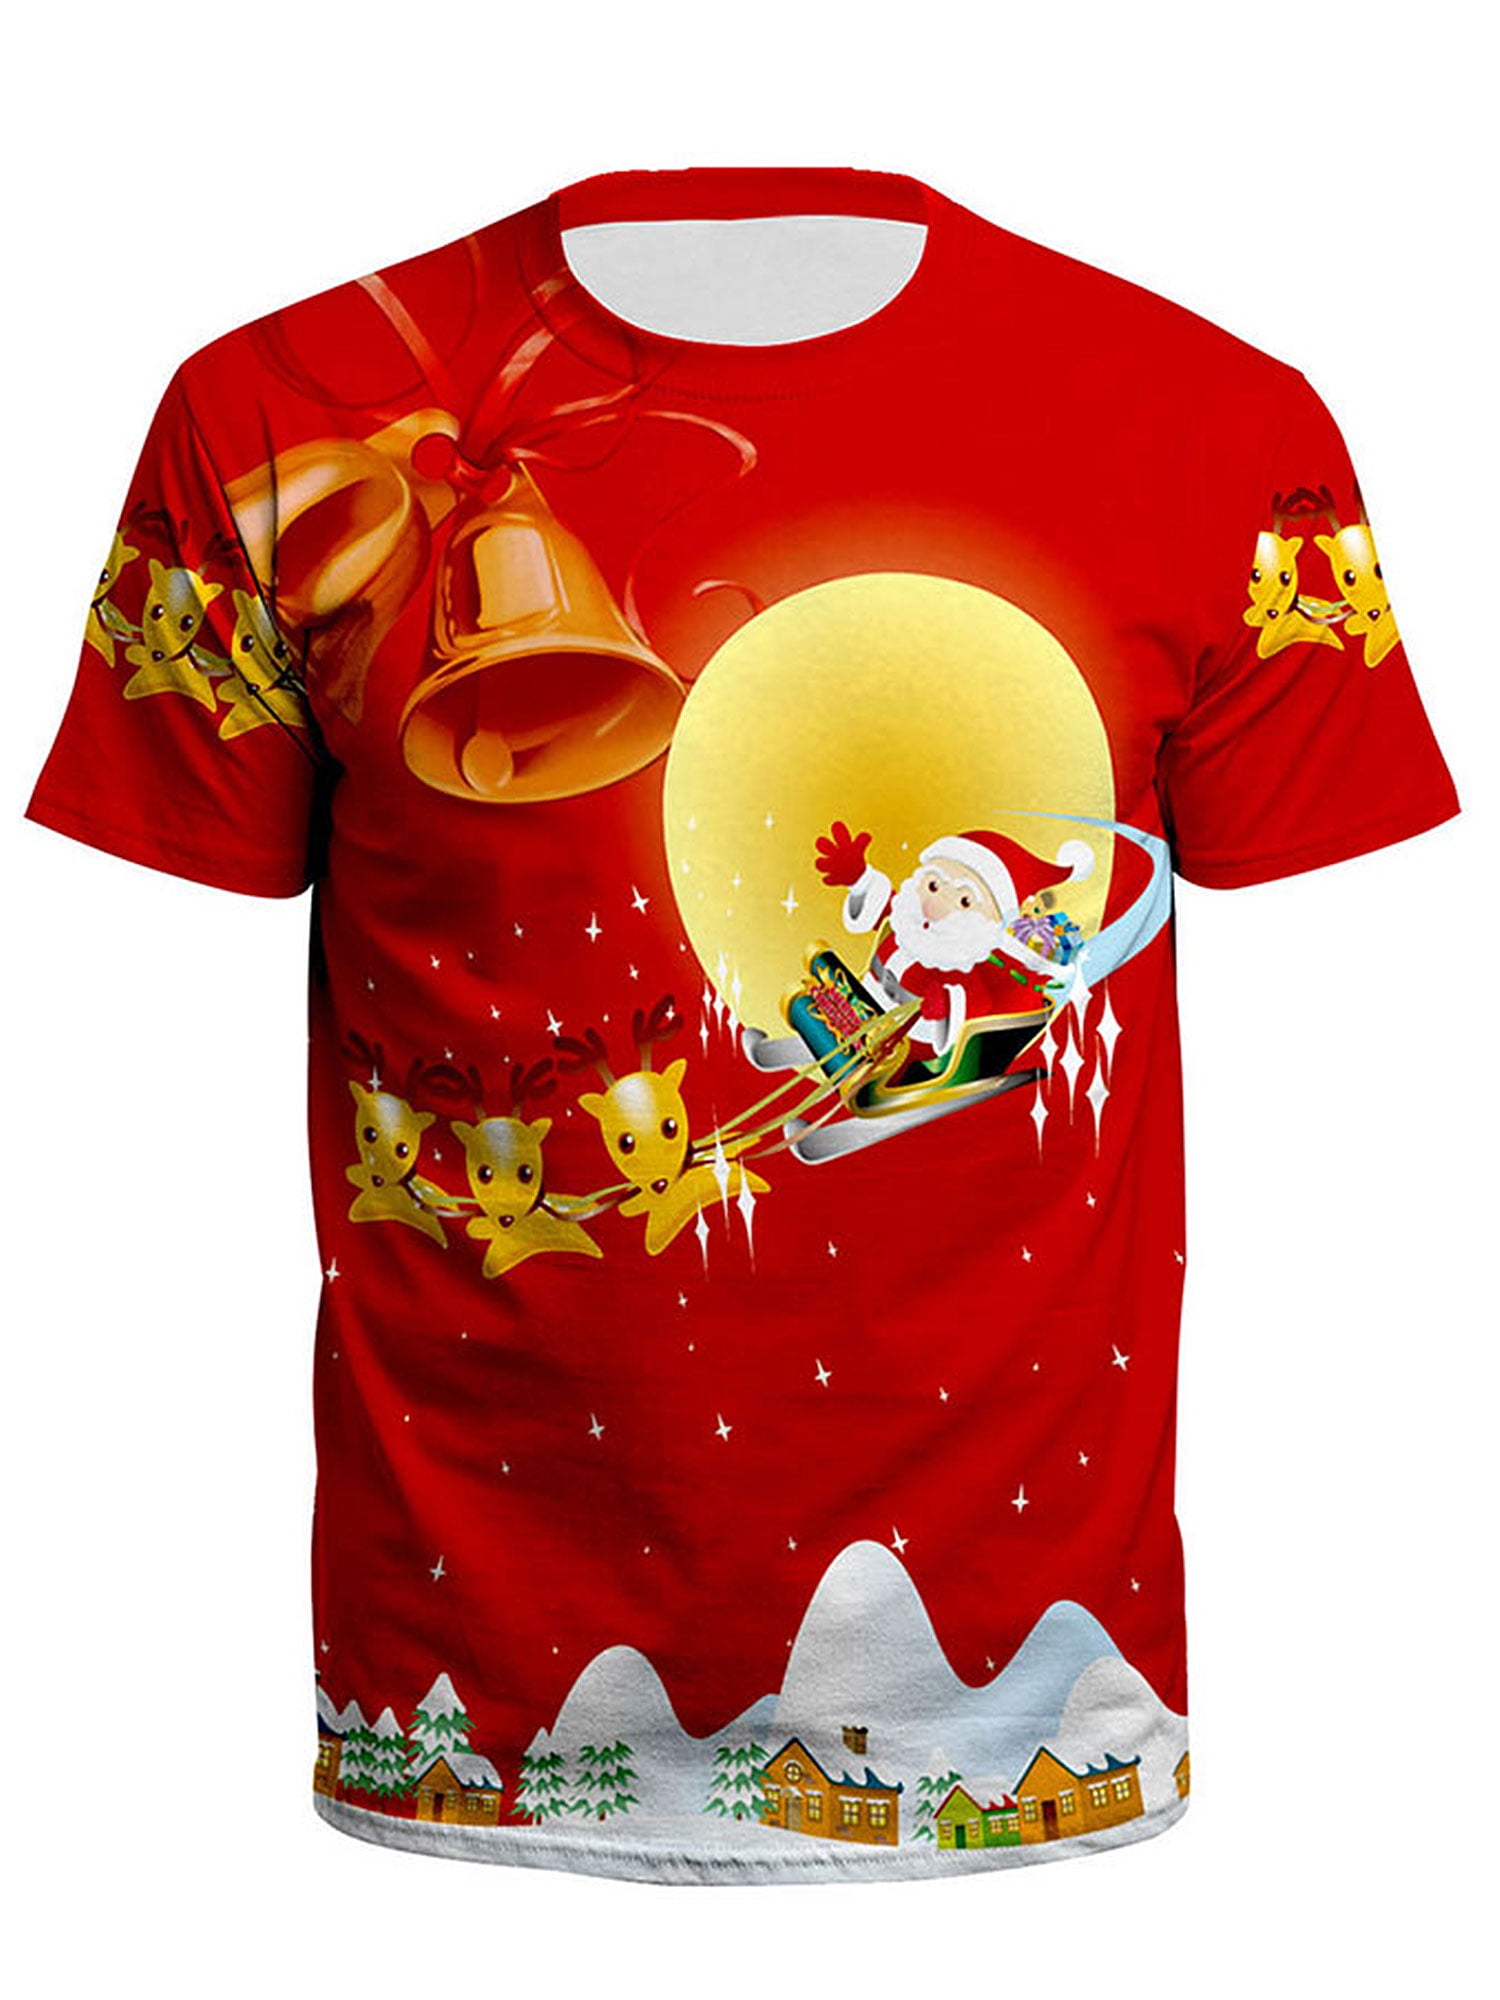 Men's Santa T Shirt Santa Is Coming Christmas Shirts Graphic Xmas Tee 34 Sleeve Raglan